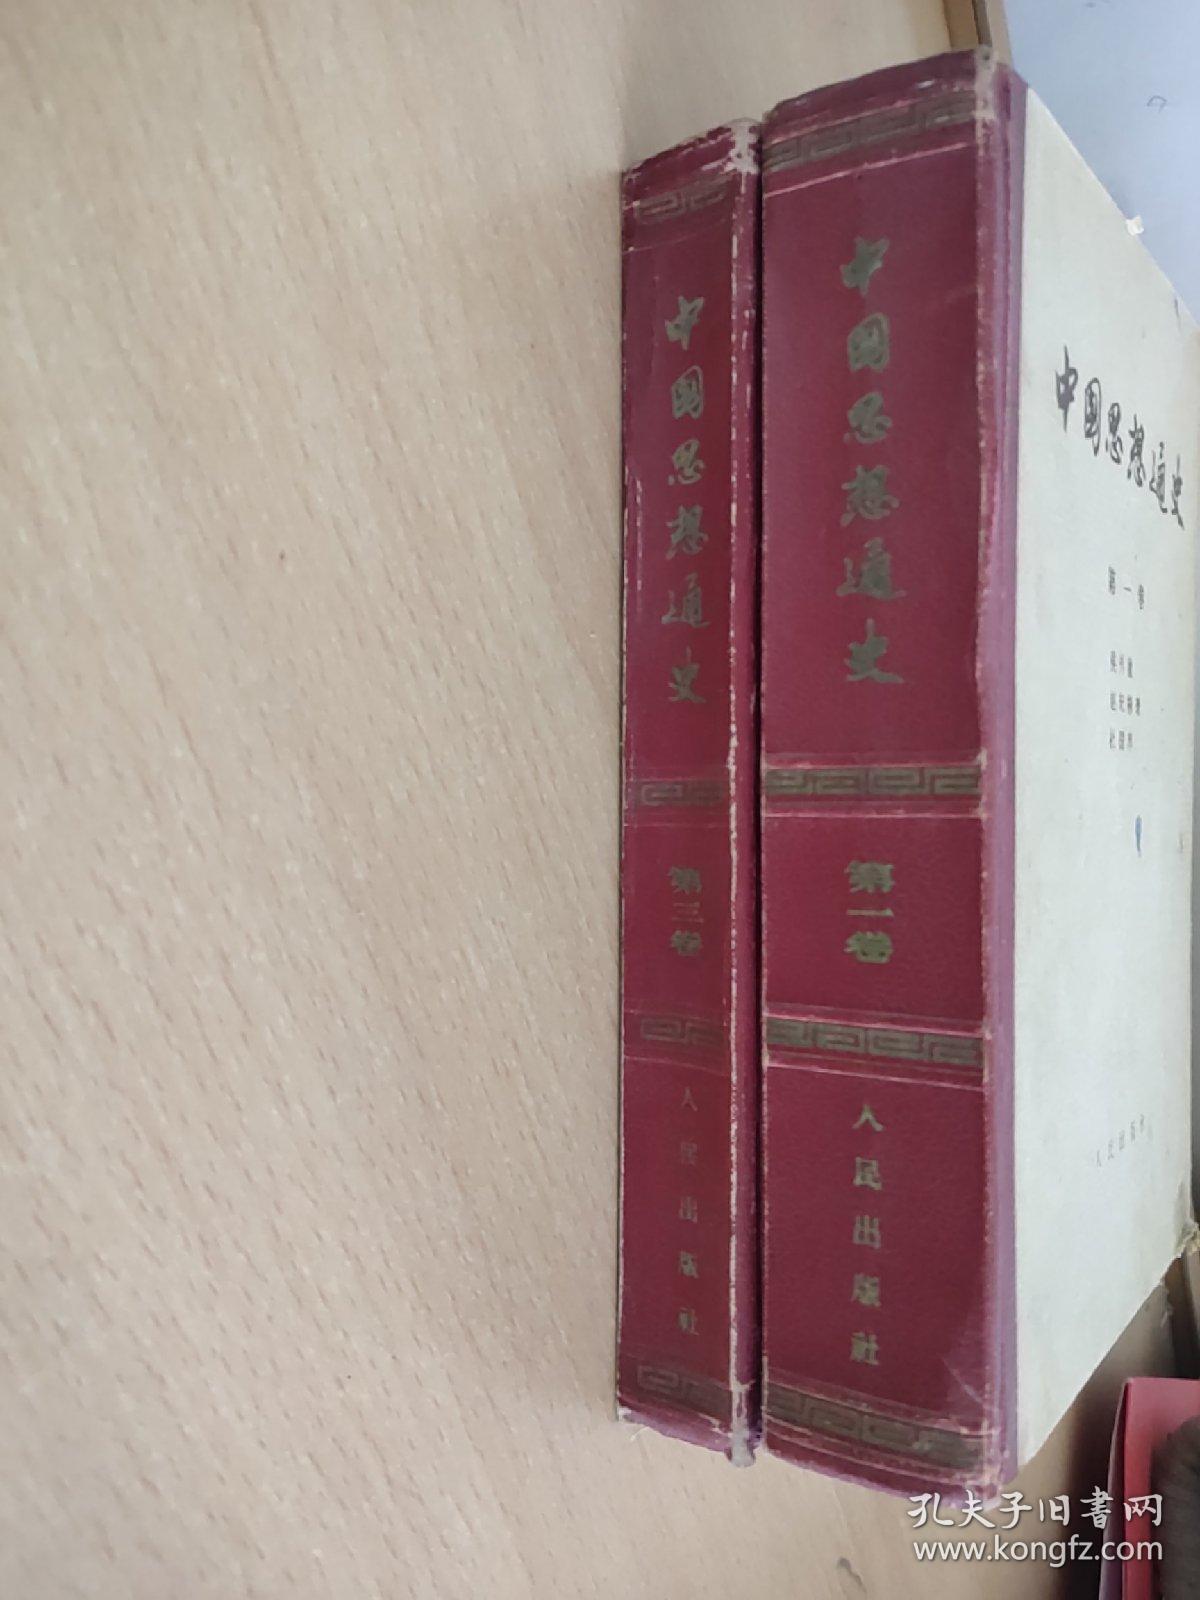 中国思想通史《第一卷、第三卷合售》